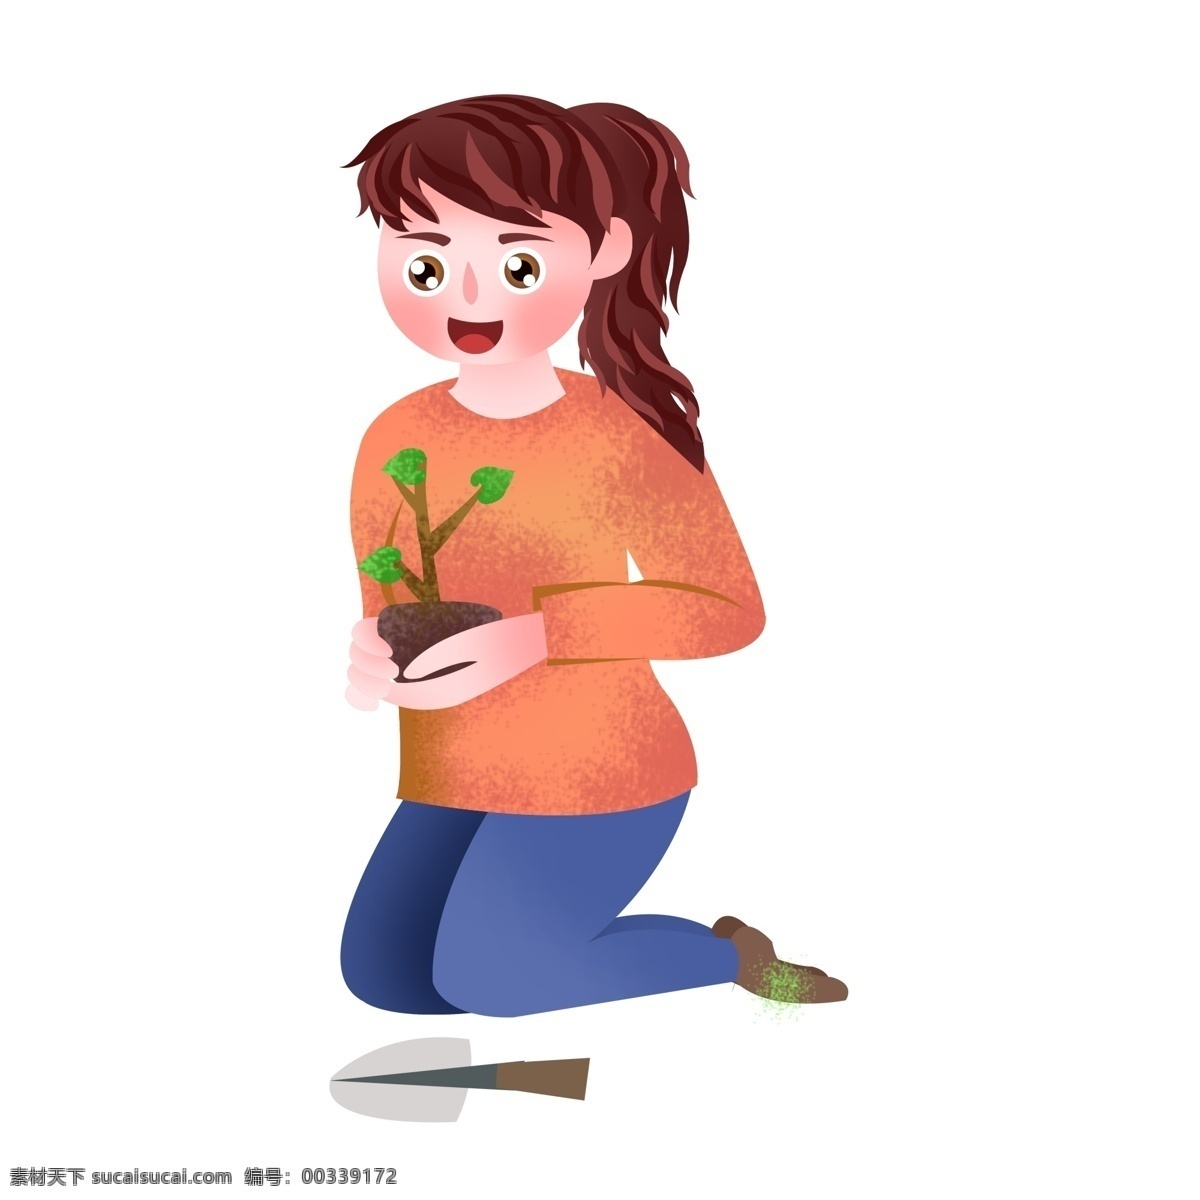 手绘 捧 着想 小 树苗 女孩 人物 插画 可爱 保护环境 小树苗 小铲子 种树 植树节